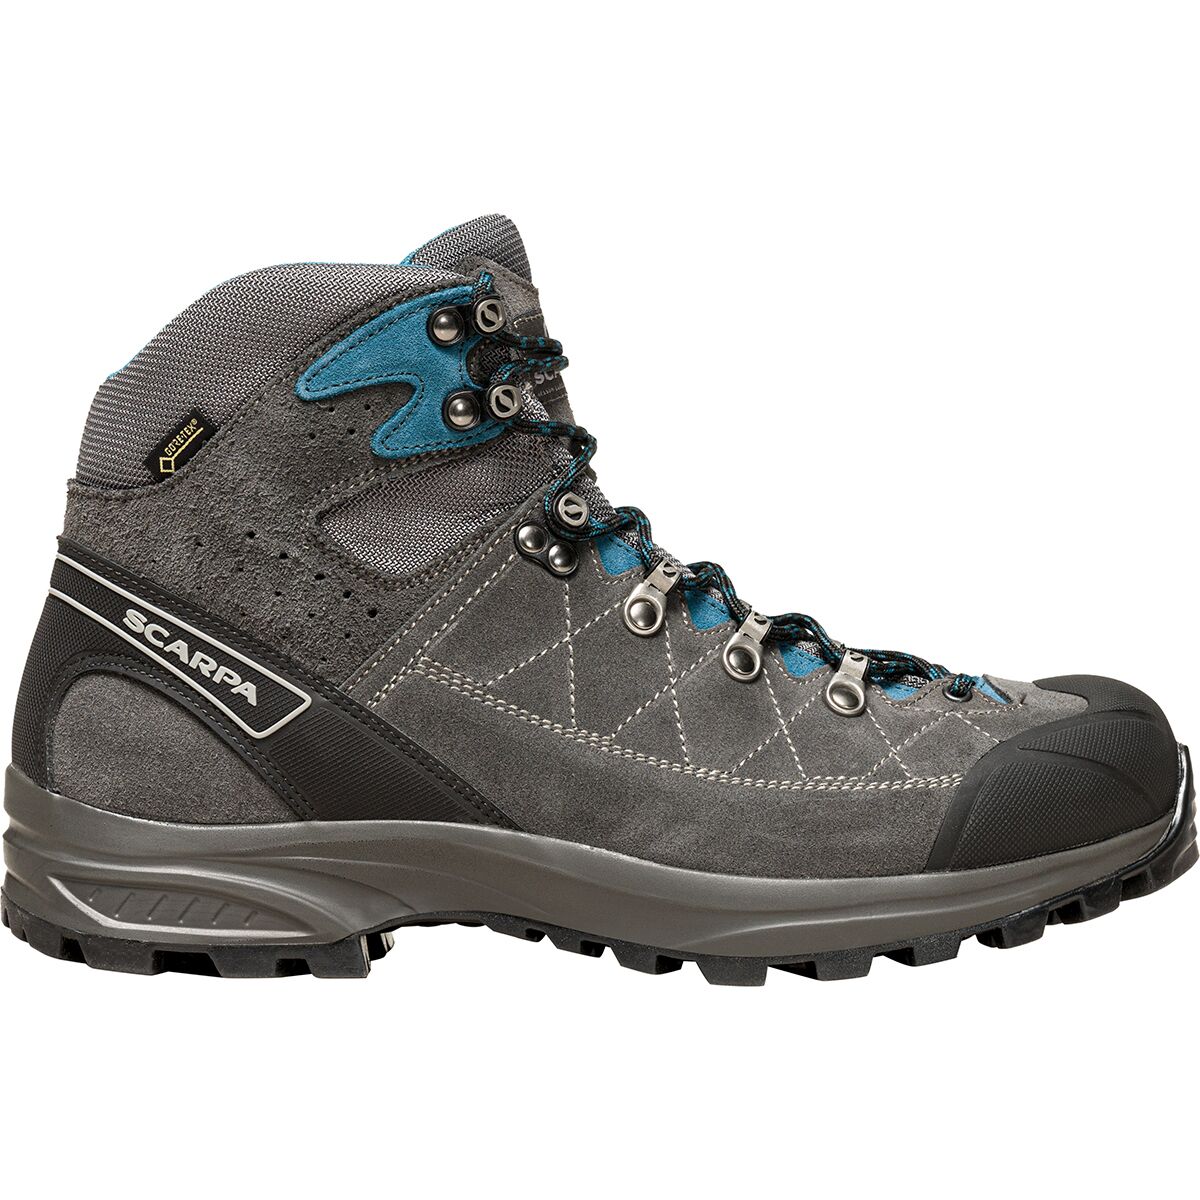 Scarpa Kailash Trek GTX Hiking Boot - Men's